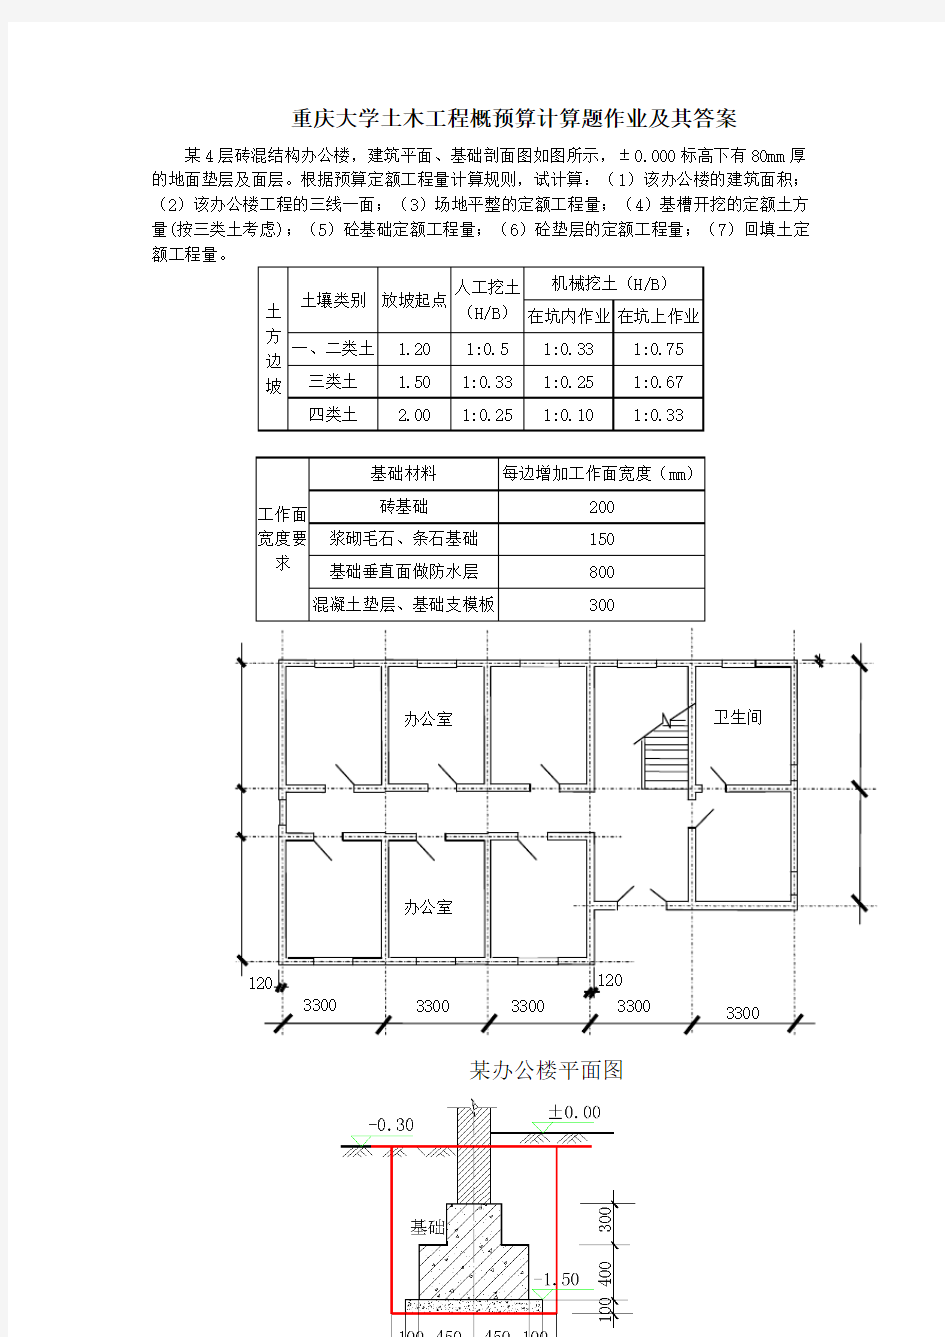 重庆大学土木工程概预算计算题作业及其答案